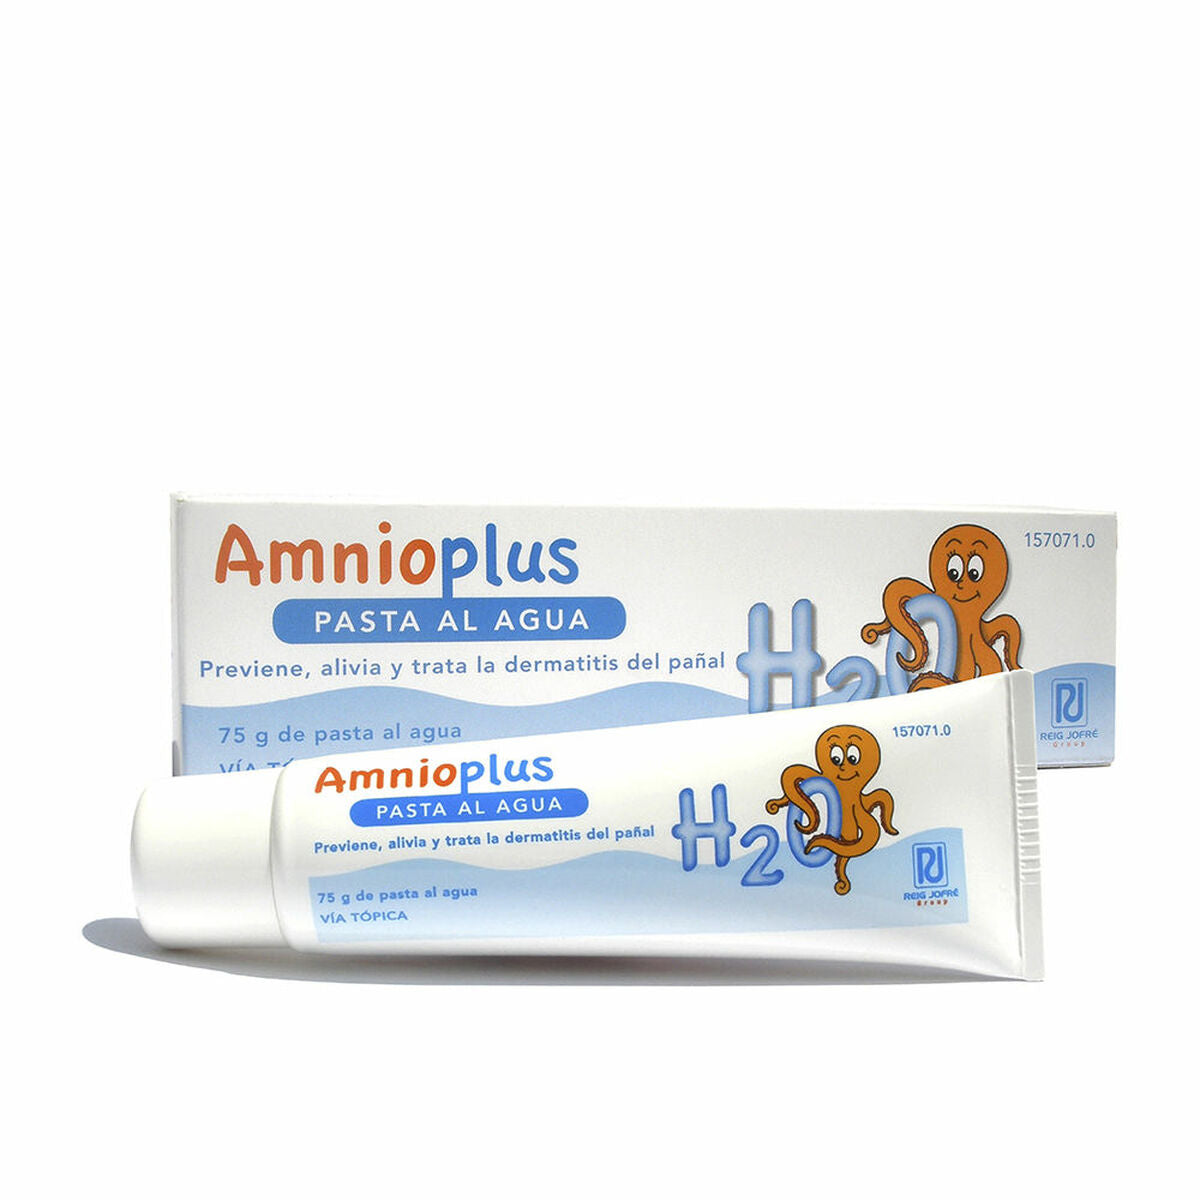 Creme Amnioplus Amnioplus O Ideal für empfindliche, elergische und atopische Dermatitis-Haut